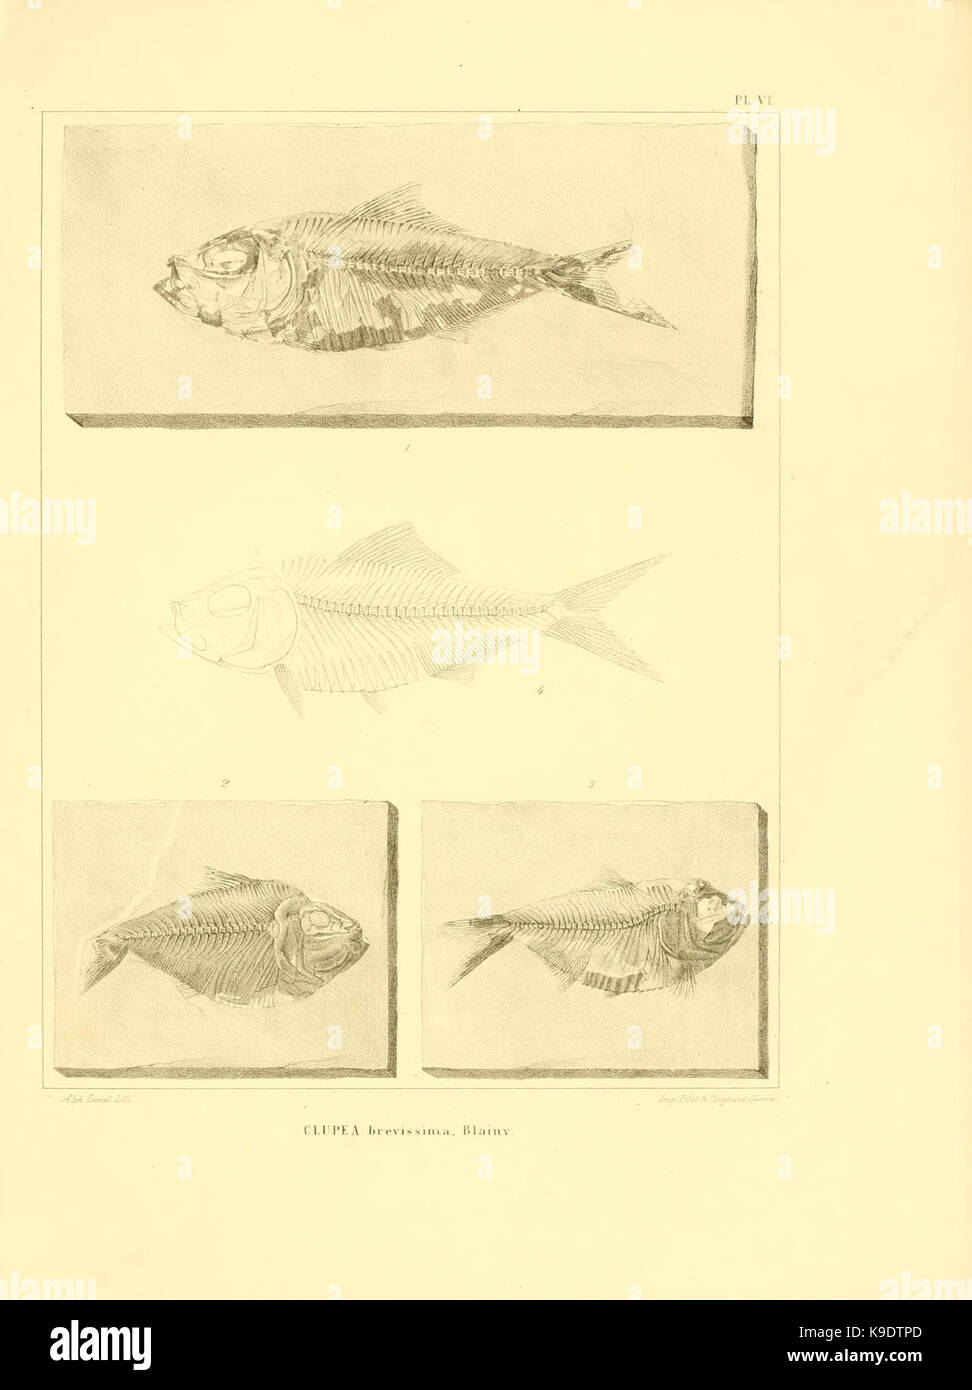 Nouvelles recherches sur les poissons fossiles du Mont Liban (Pl. VI) BHL8532186 Stock Photo